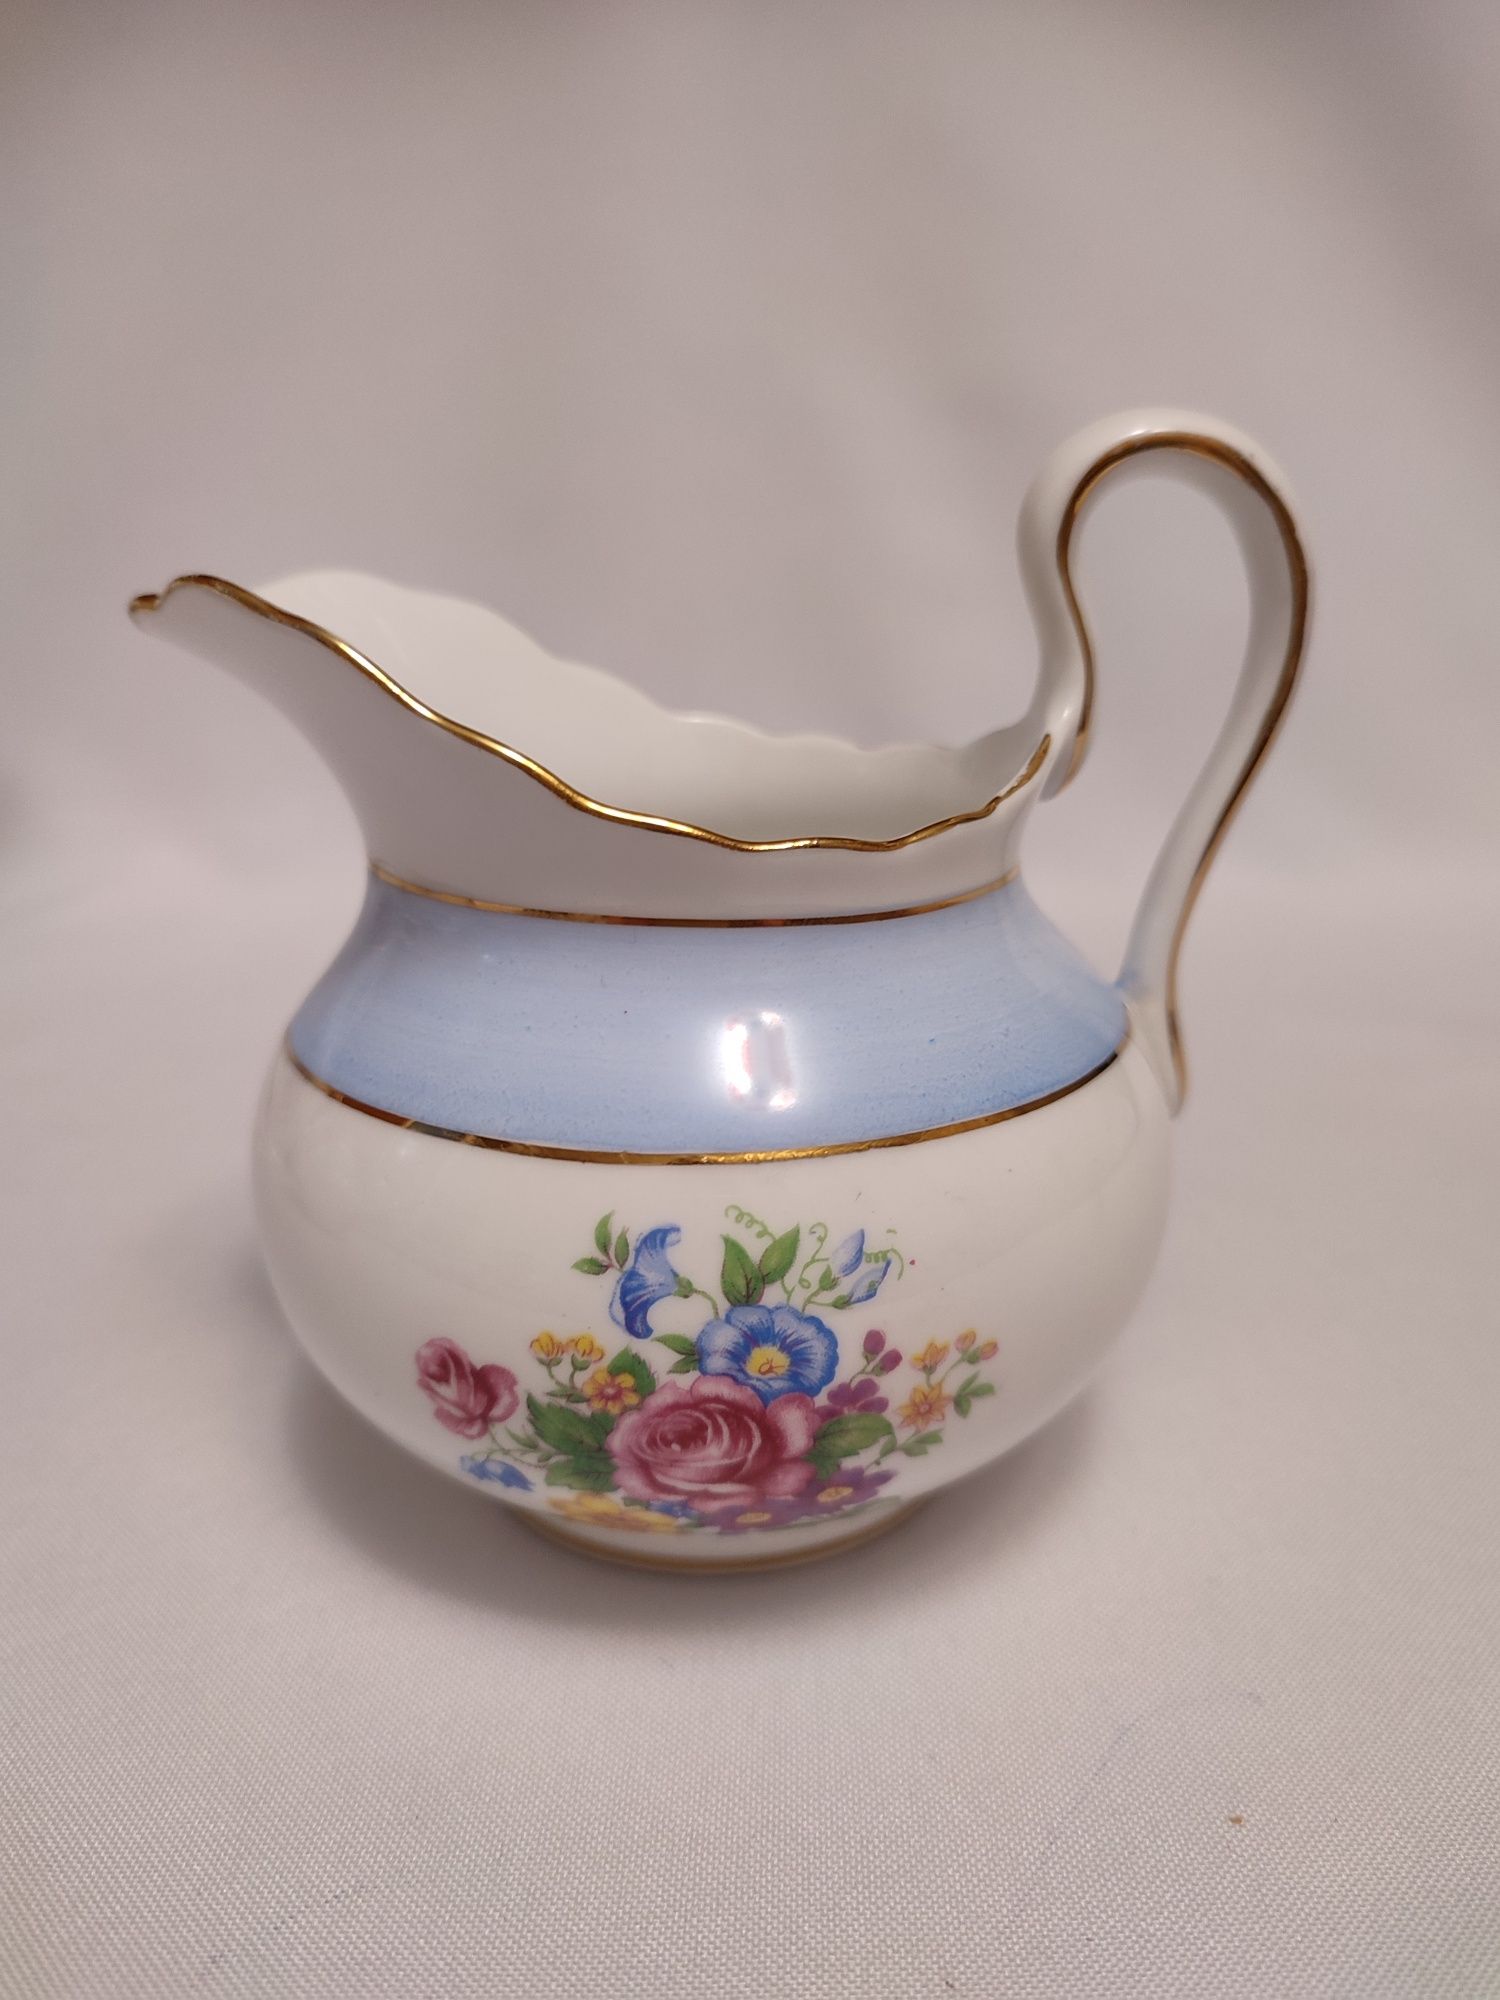 Чайный сервиз Tuscan fine bone china Англия. 1947г. Ретро,винтаж,антик